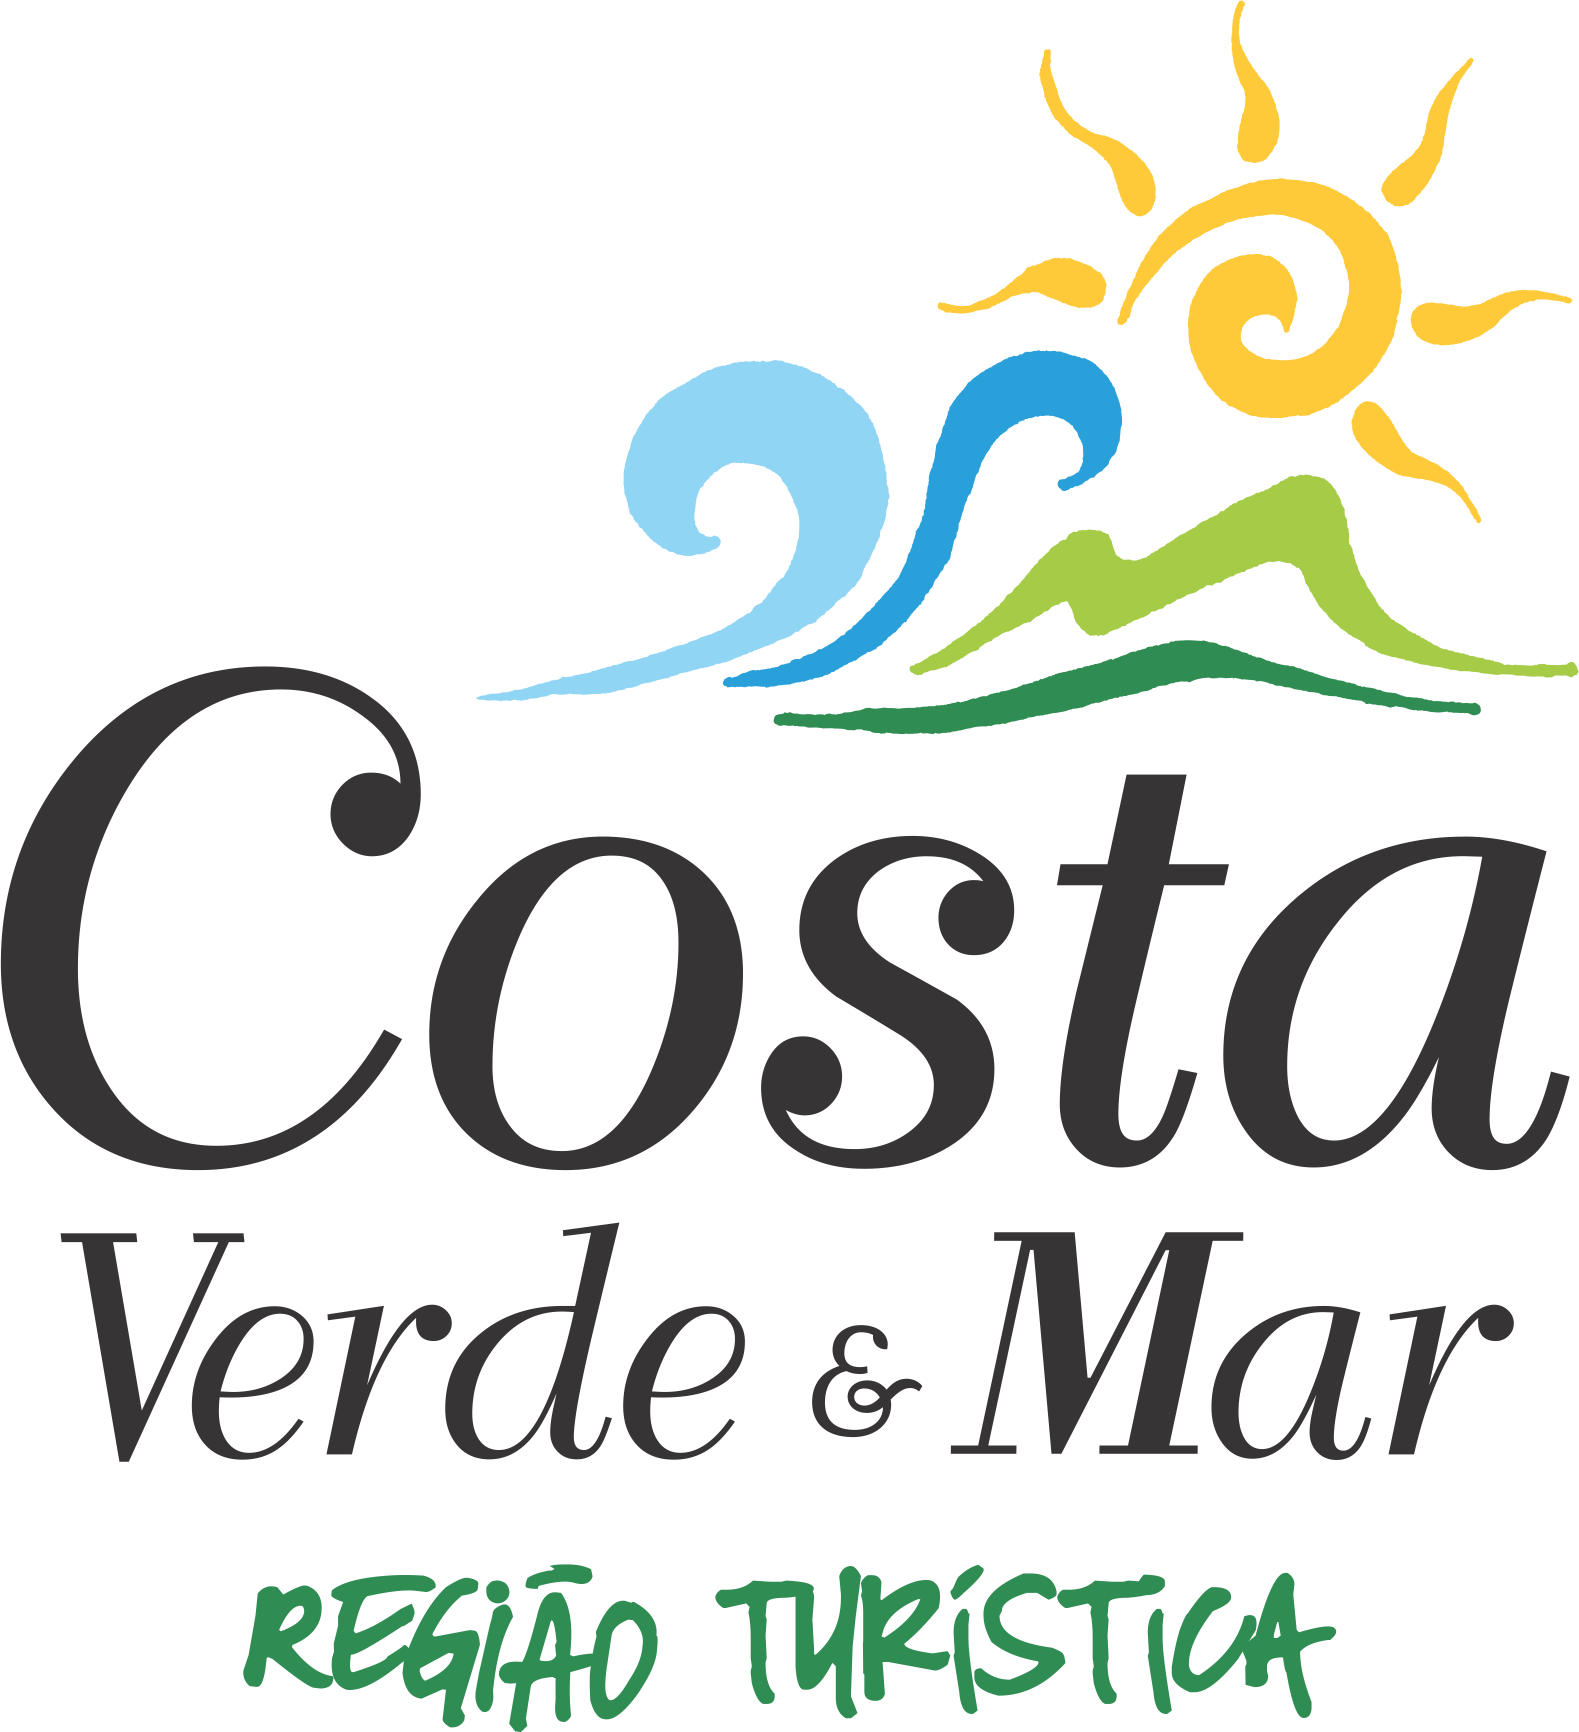 You are currently viewing Calendário de Eventos do mês de agosto da Região Costa Verde & Mar